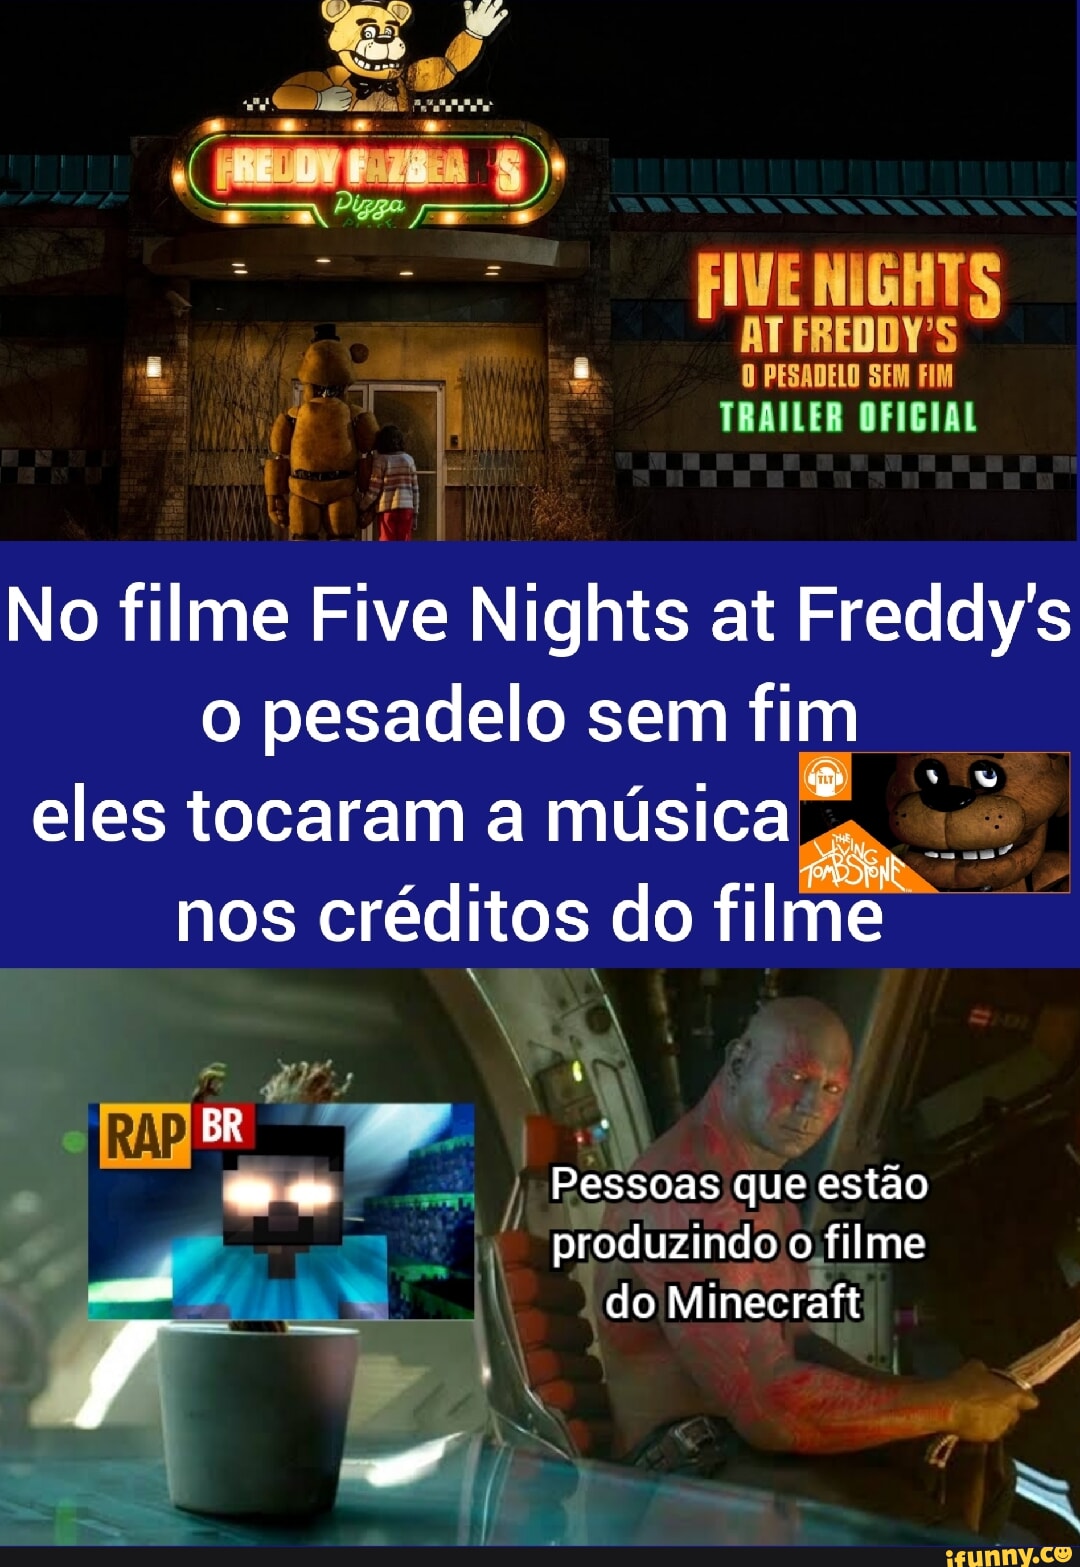 Five Nignts at Freddy's - O Pesadelo sem Fim